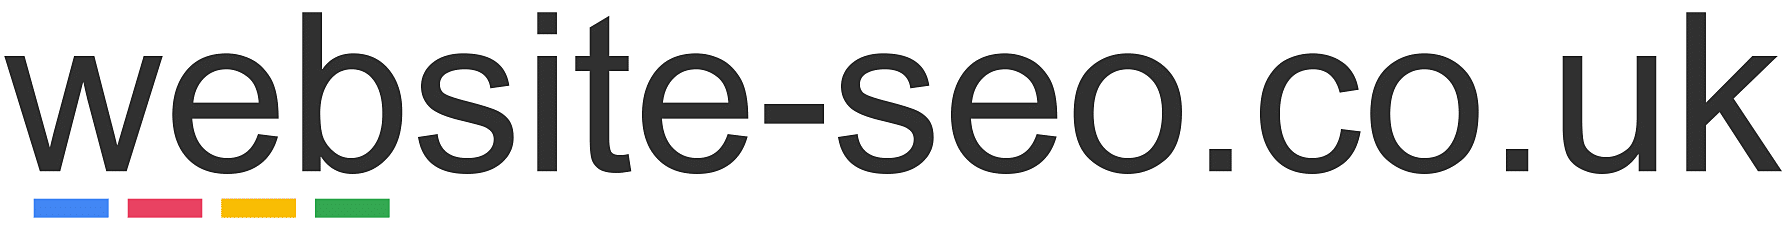 website-seo.co.uk Logo.  Suffolk SEO specialist